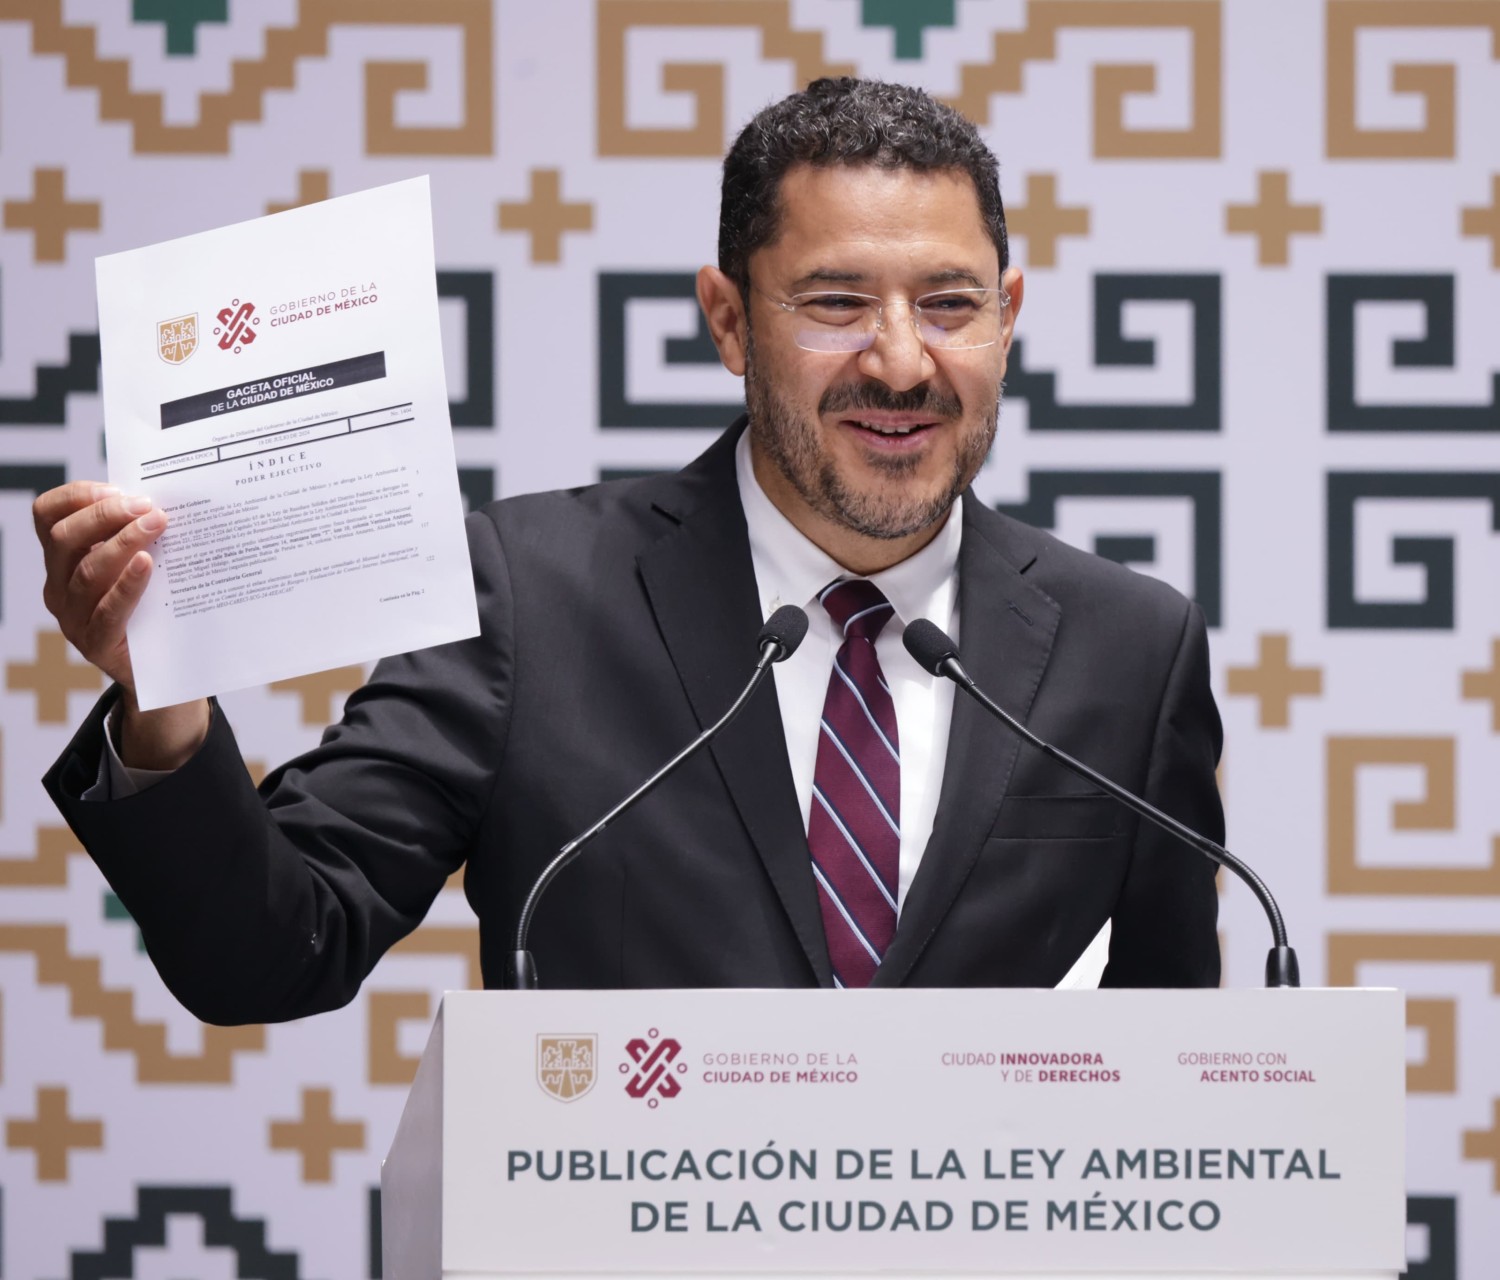 Publican nueva Ley Ambiental de la Ciudad de México